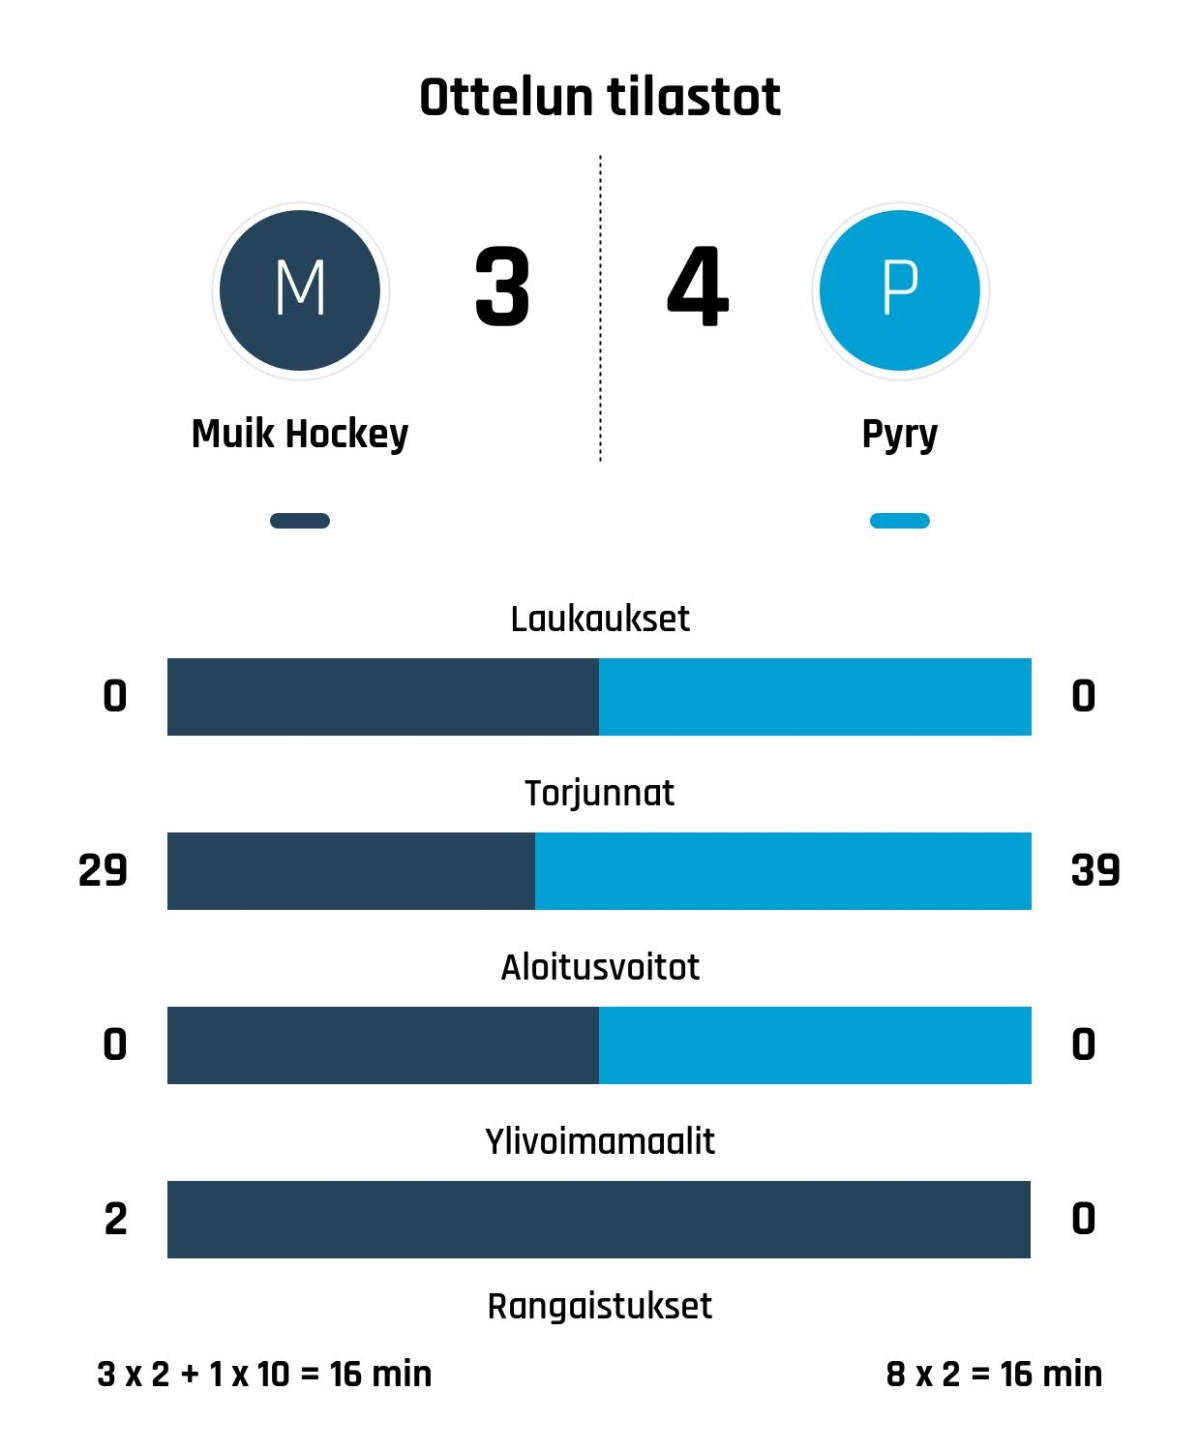 Kylmäniemi varmisti viime hetken voiton Pyry-Muik Hockey-ottelussa